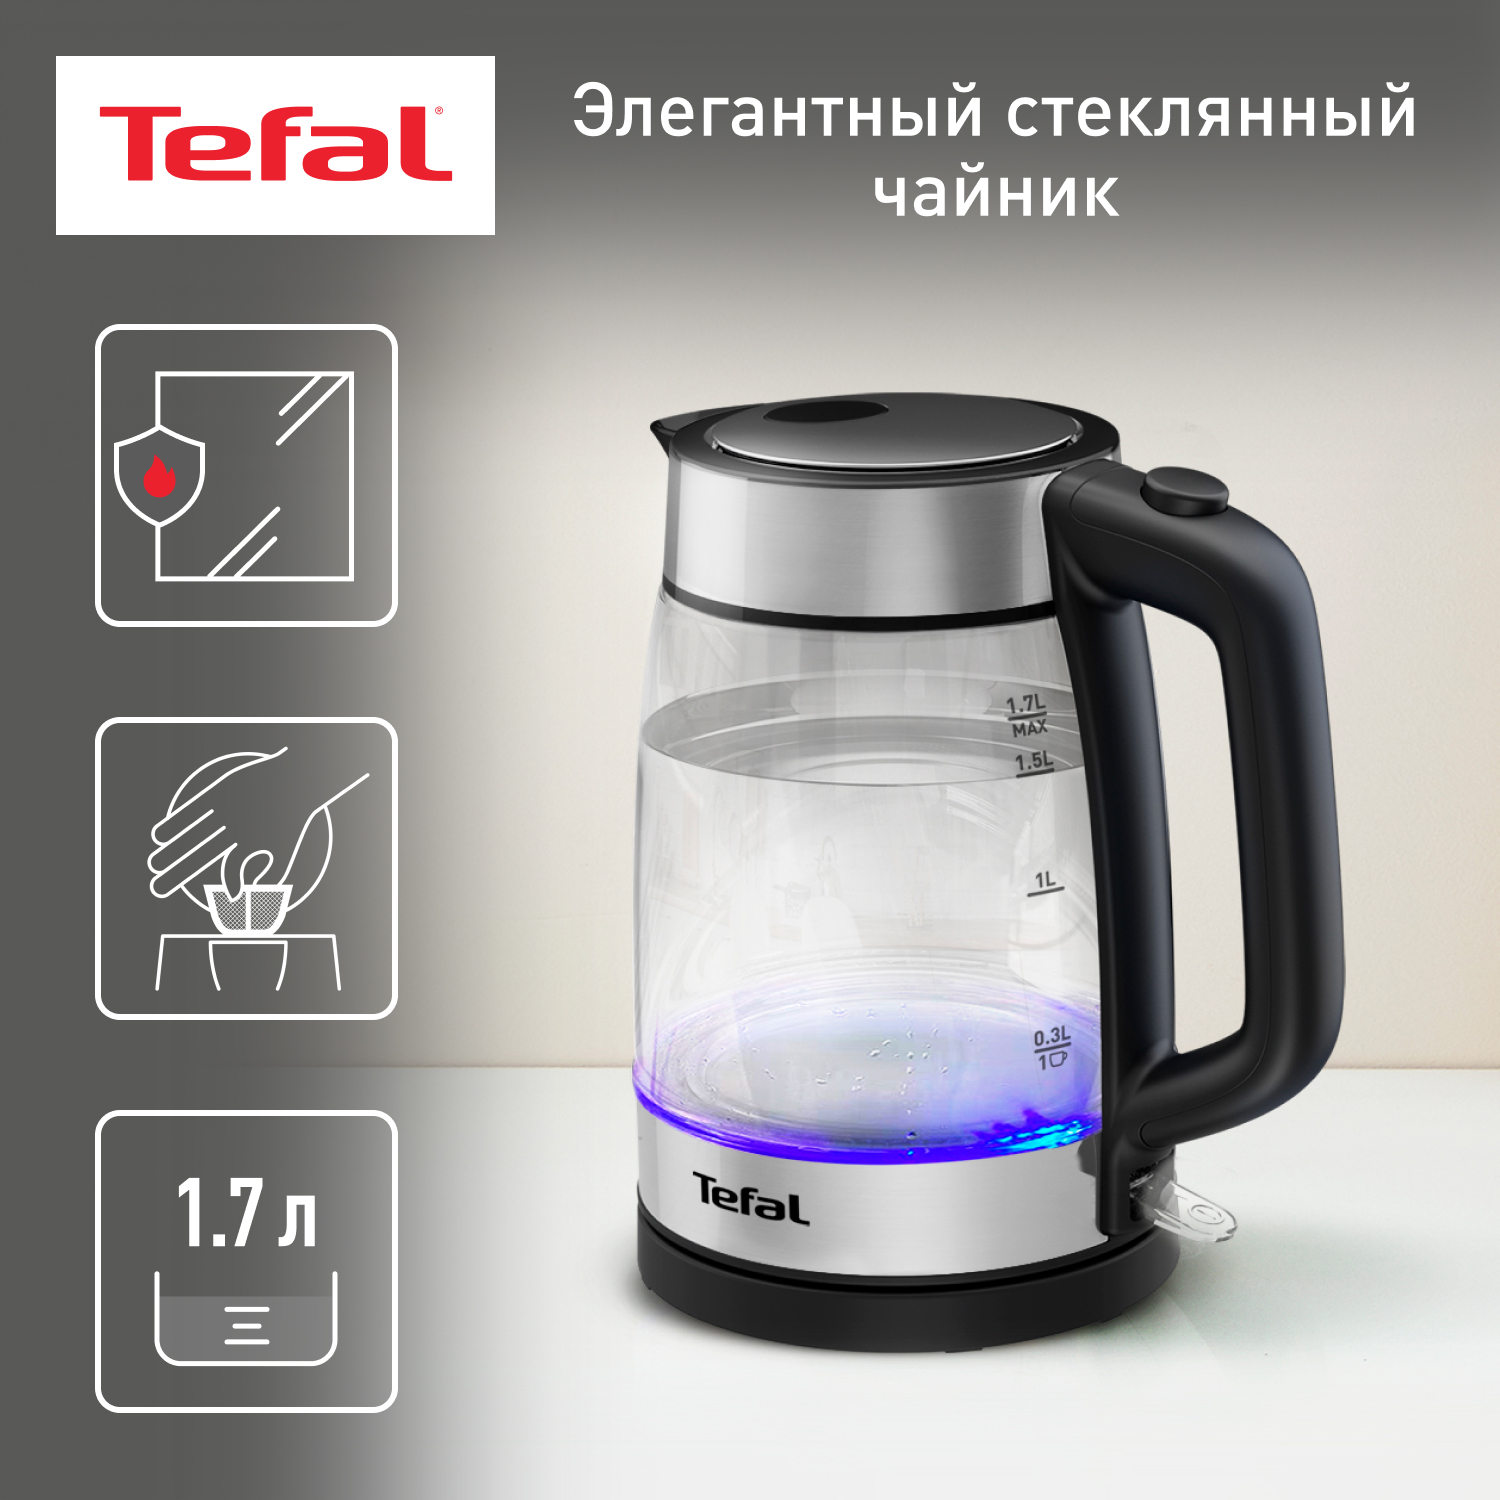 Чайник электрический Tefal KI700830 1.7 л прозрачный, серебристый, черный